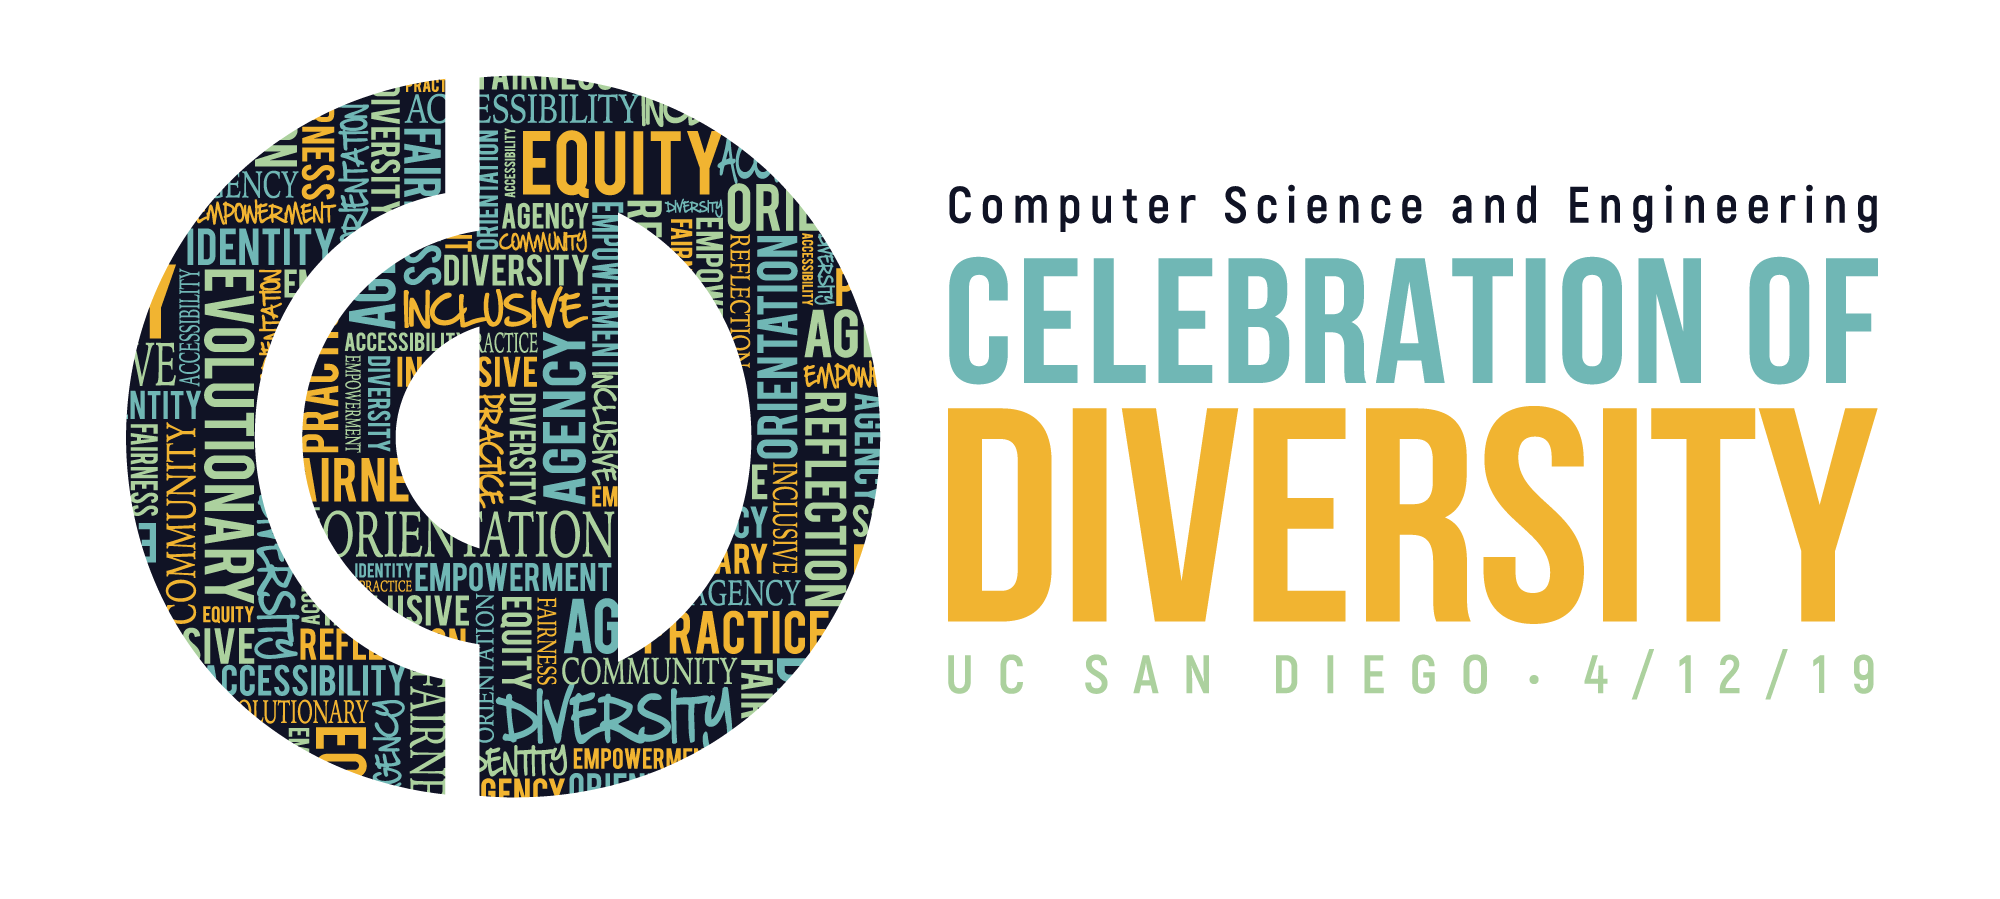 CSE Celebration of Diversity. Friday April 12, 2019